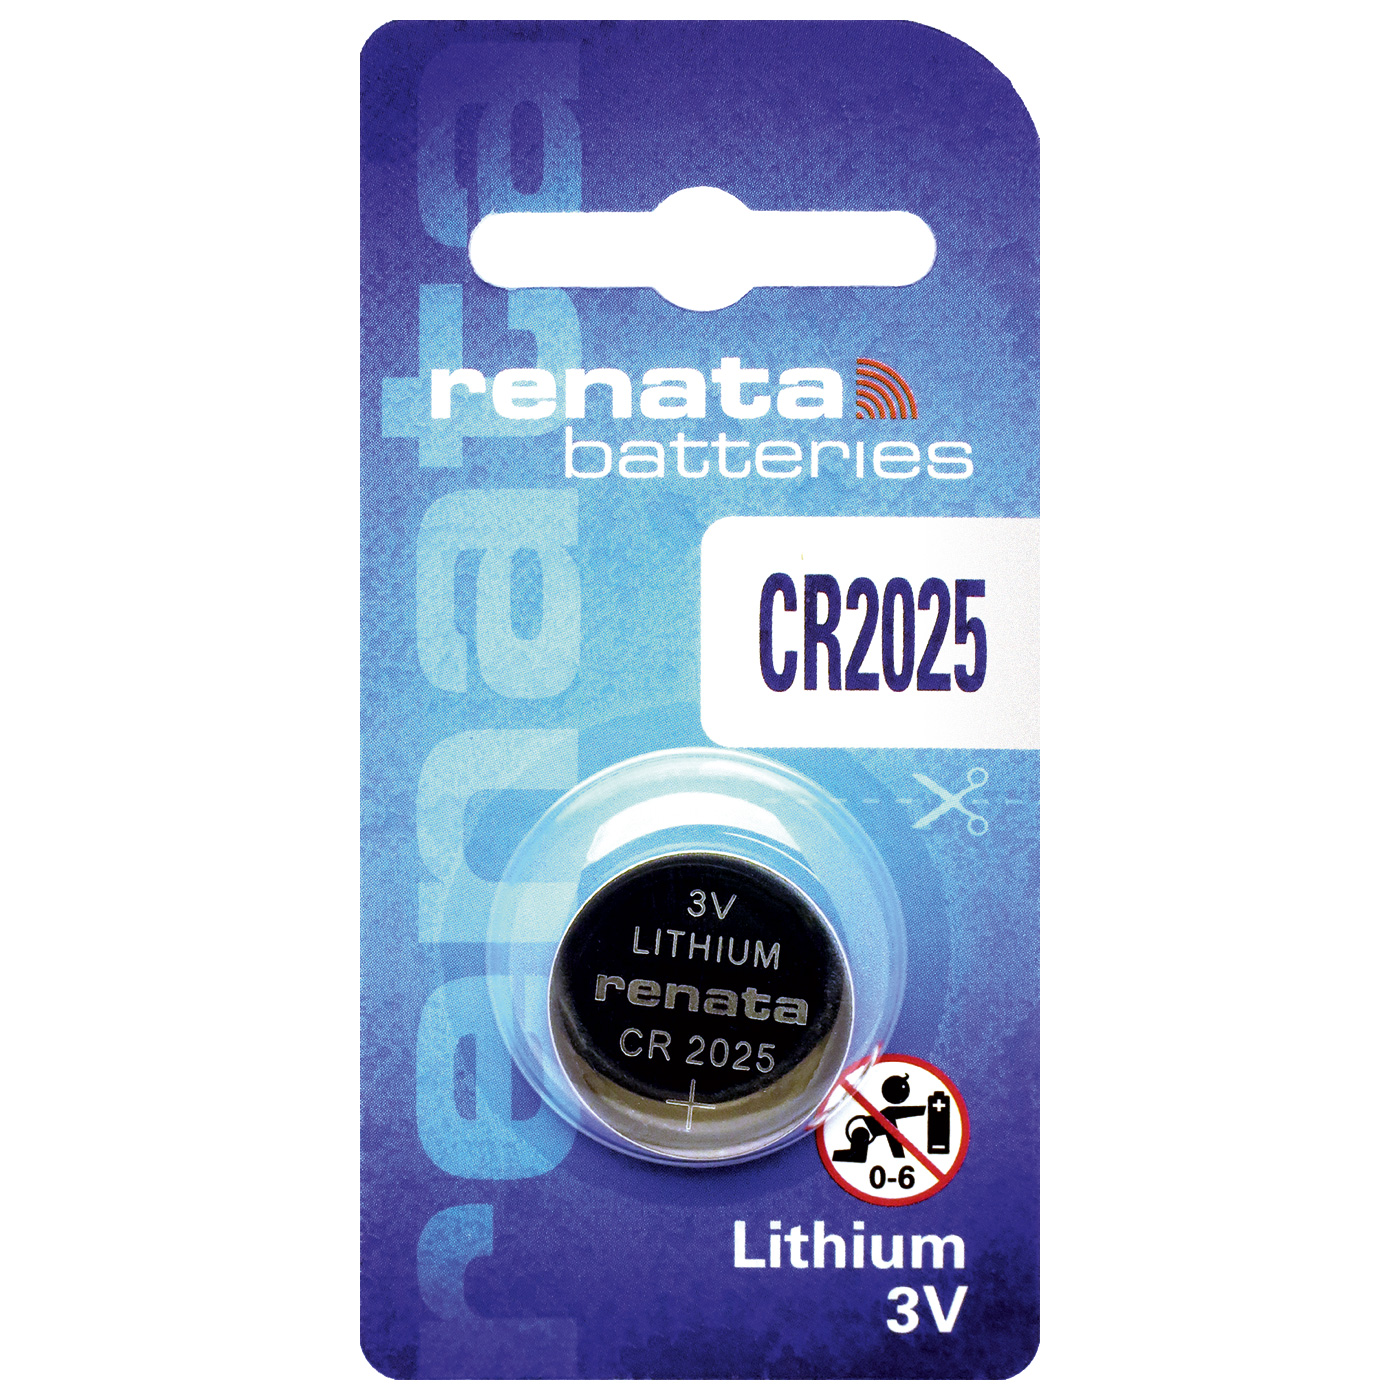 Renata CR 2025 lithium